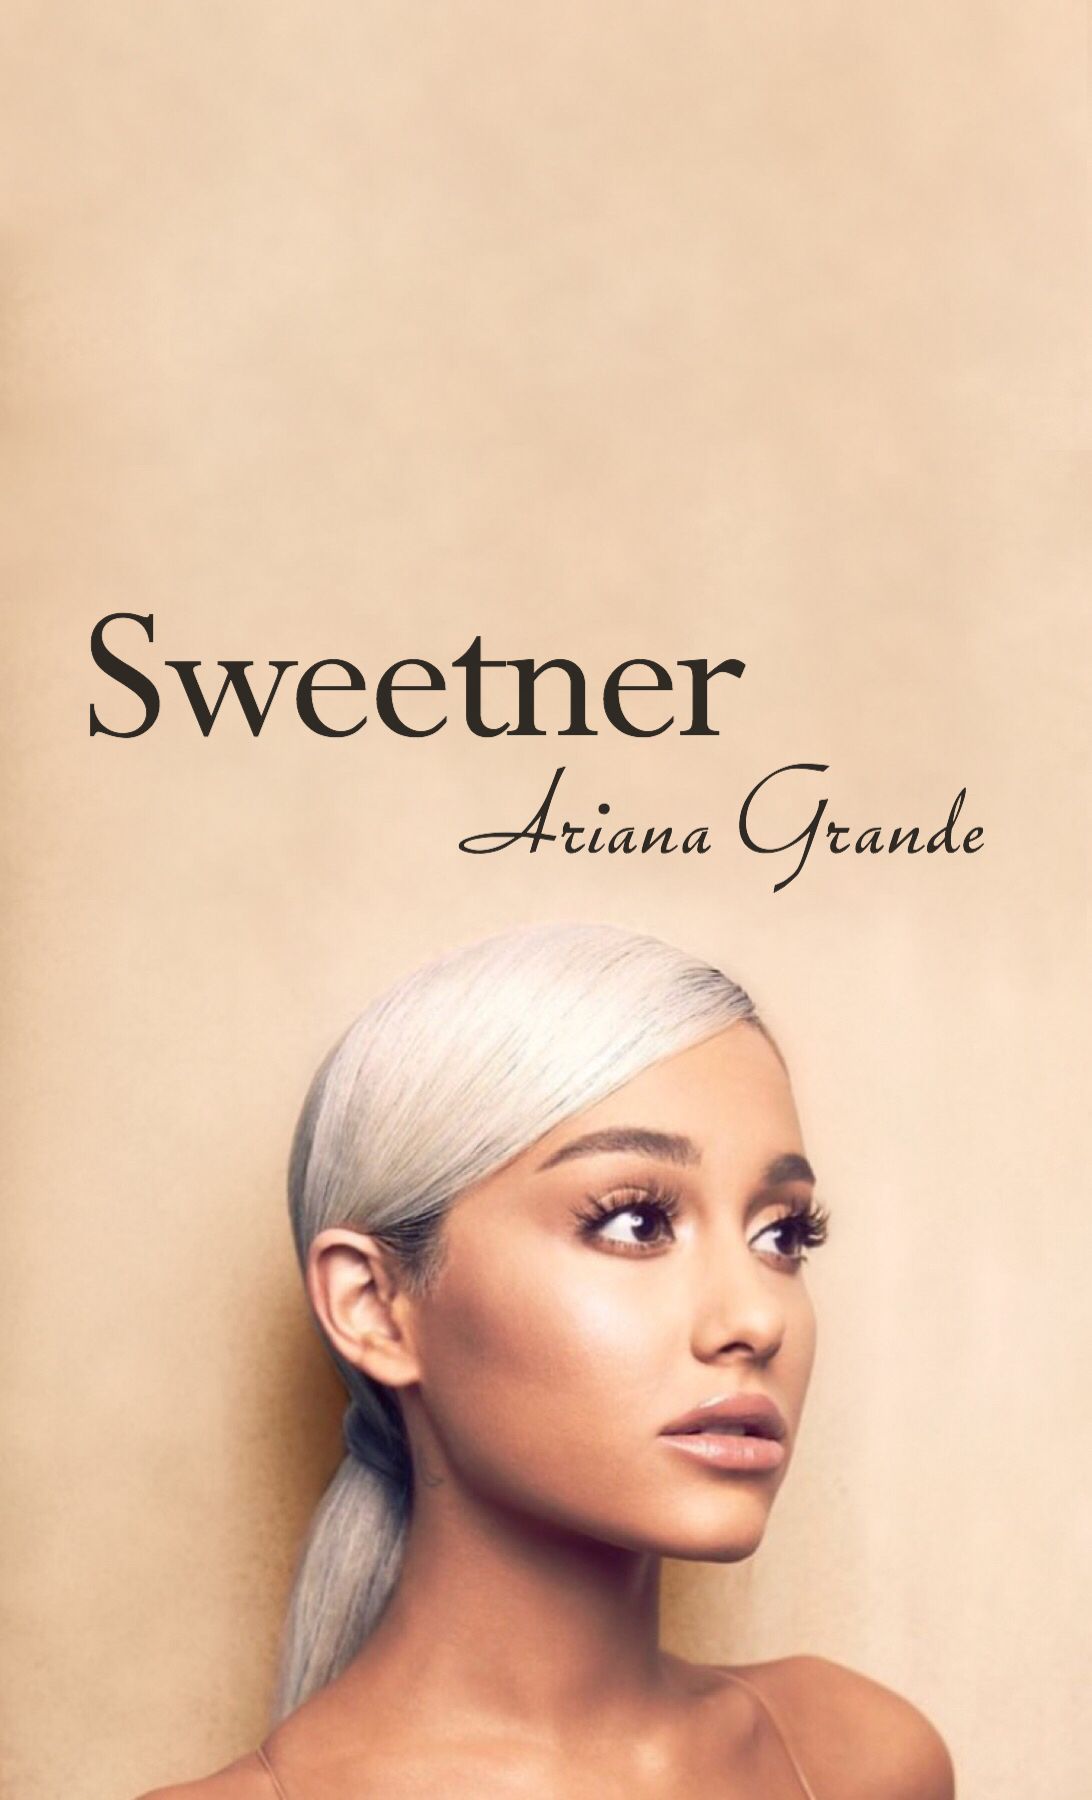 Sweetner Album Wallpaper Ariana Grande